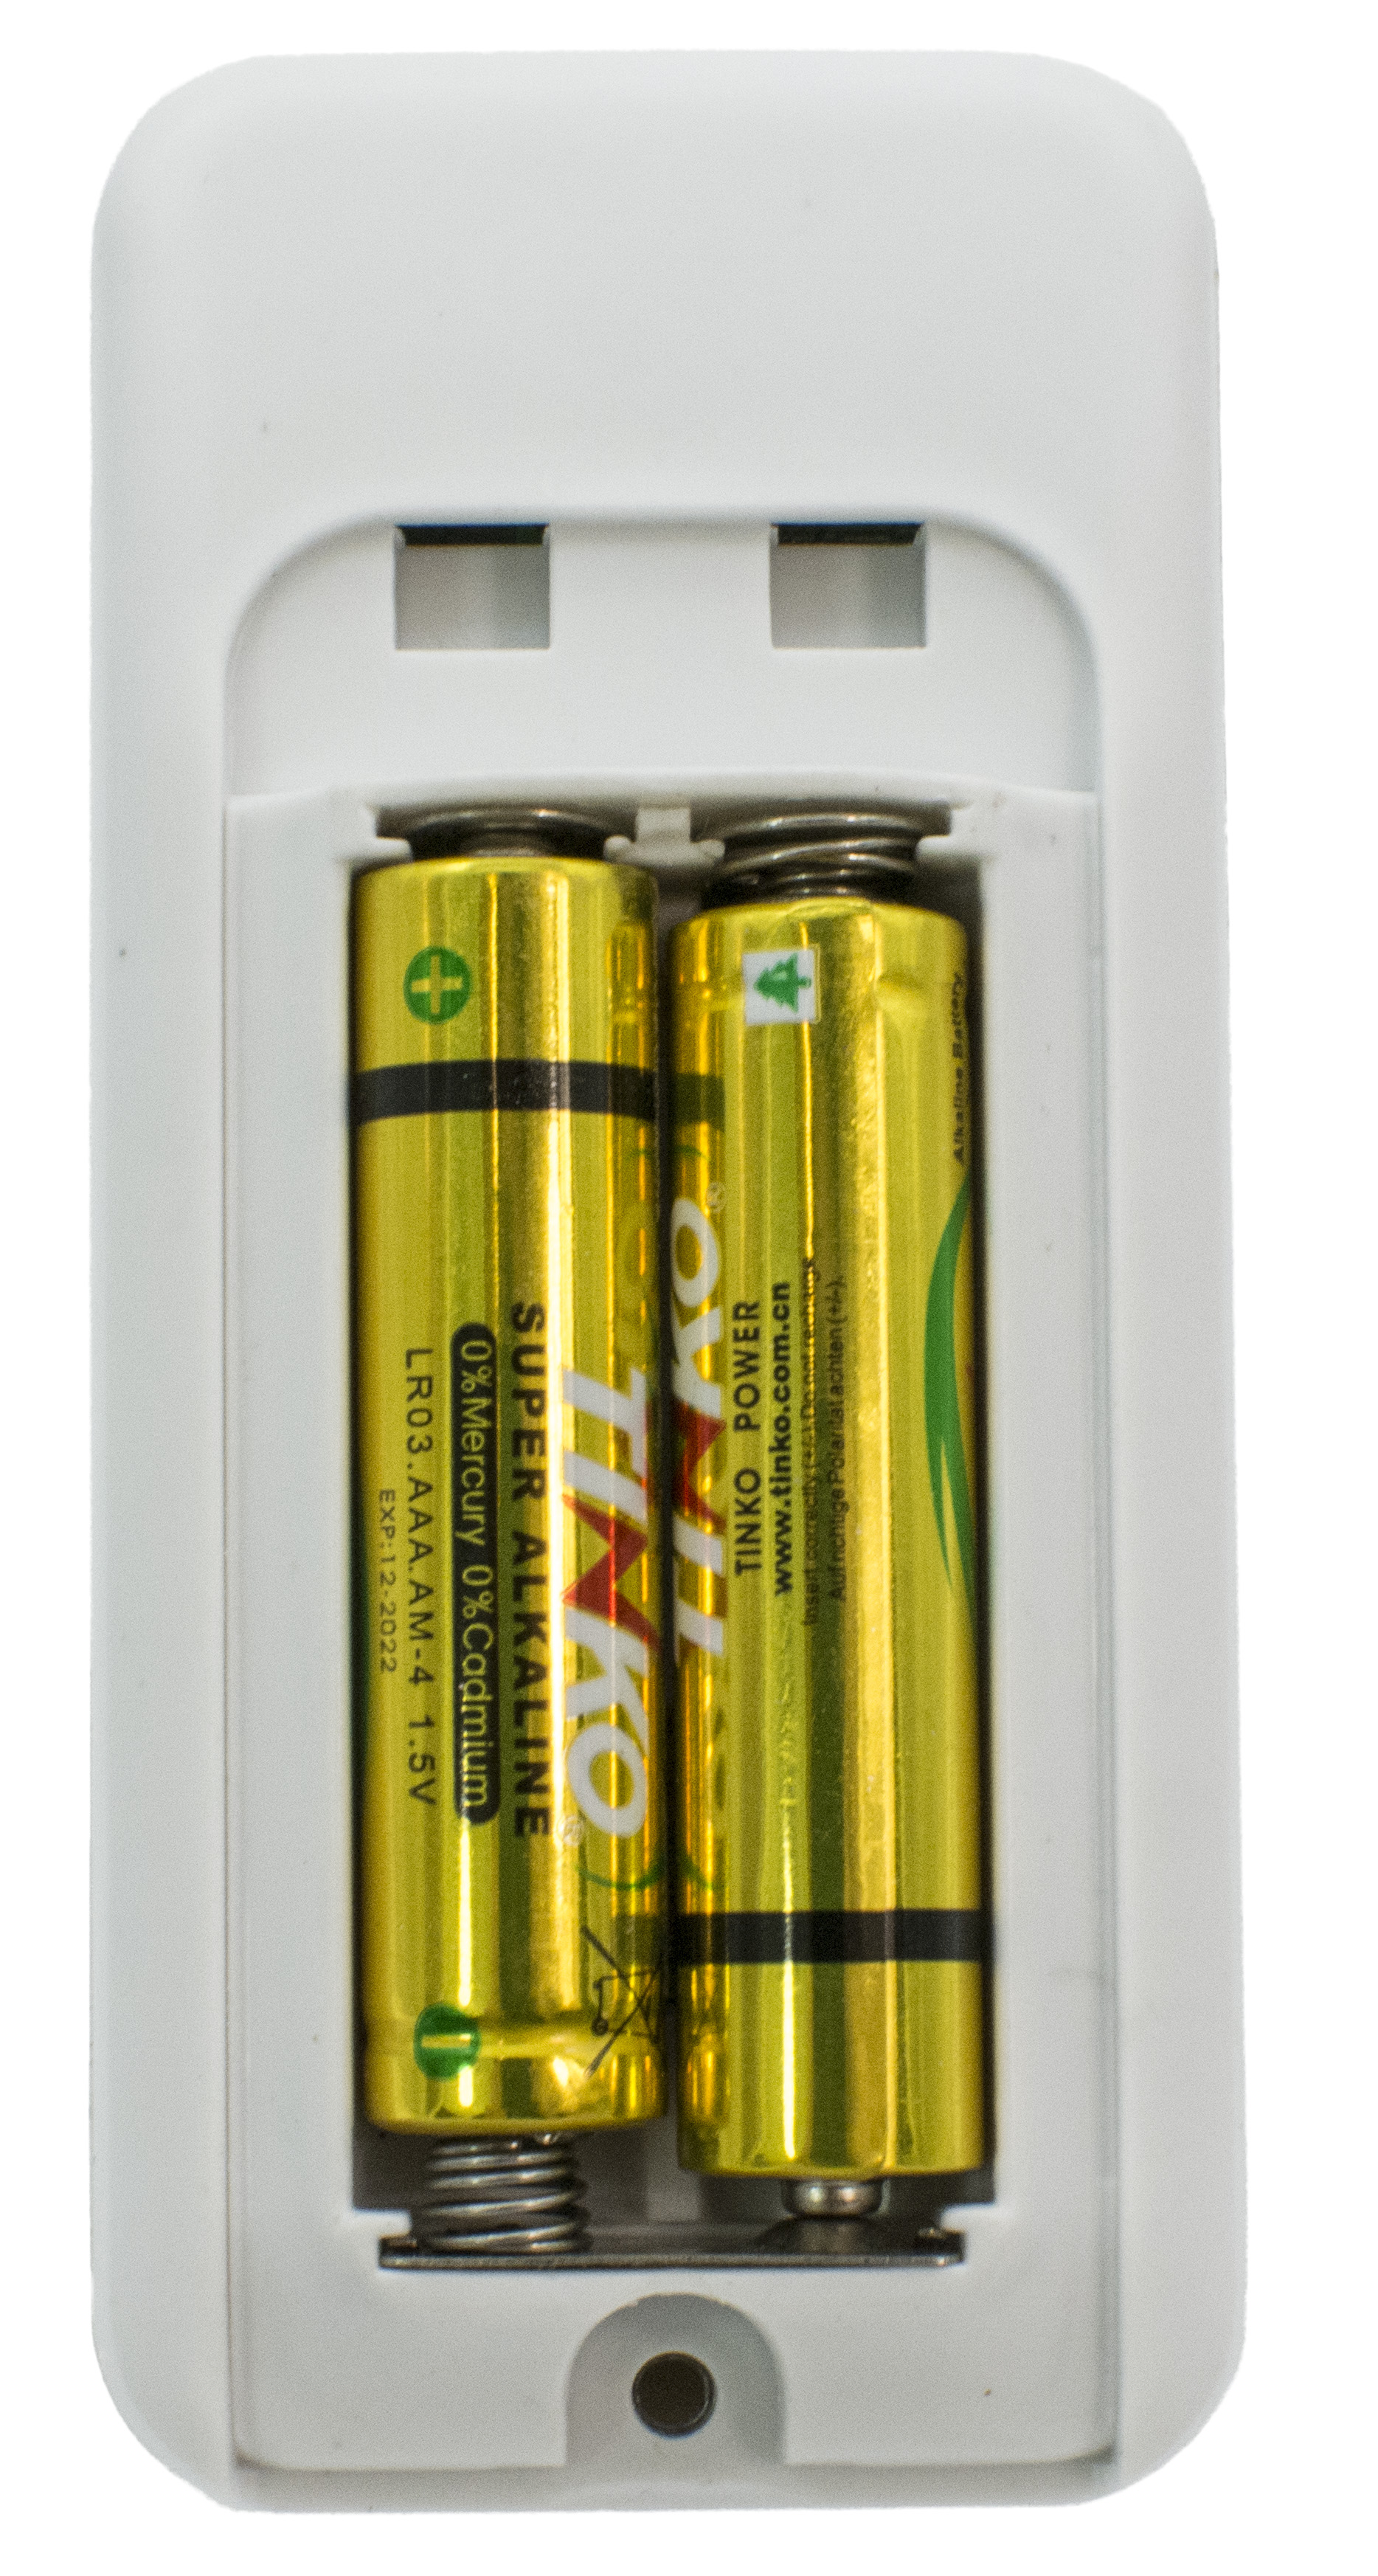 2 x AAA Batteries.